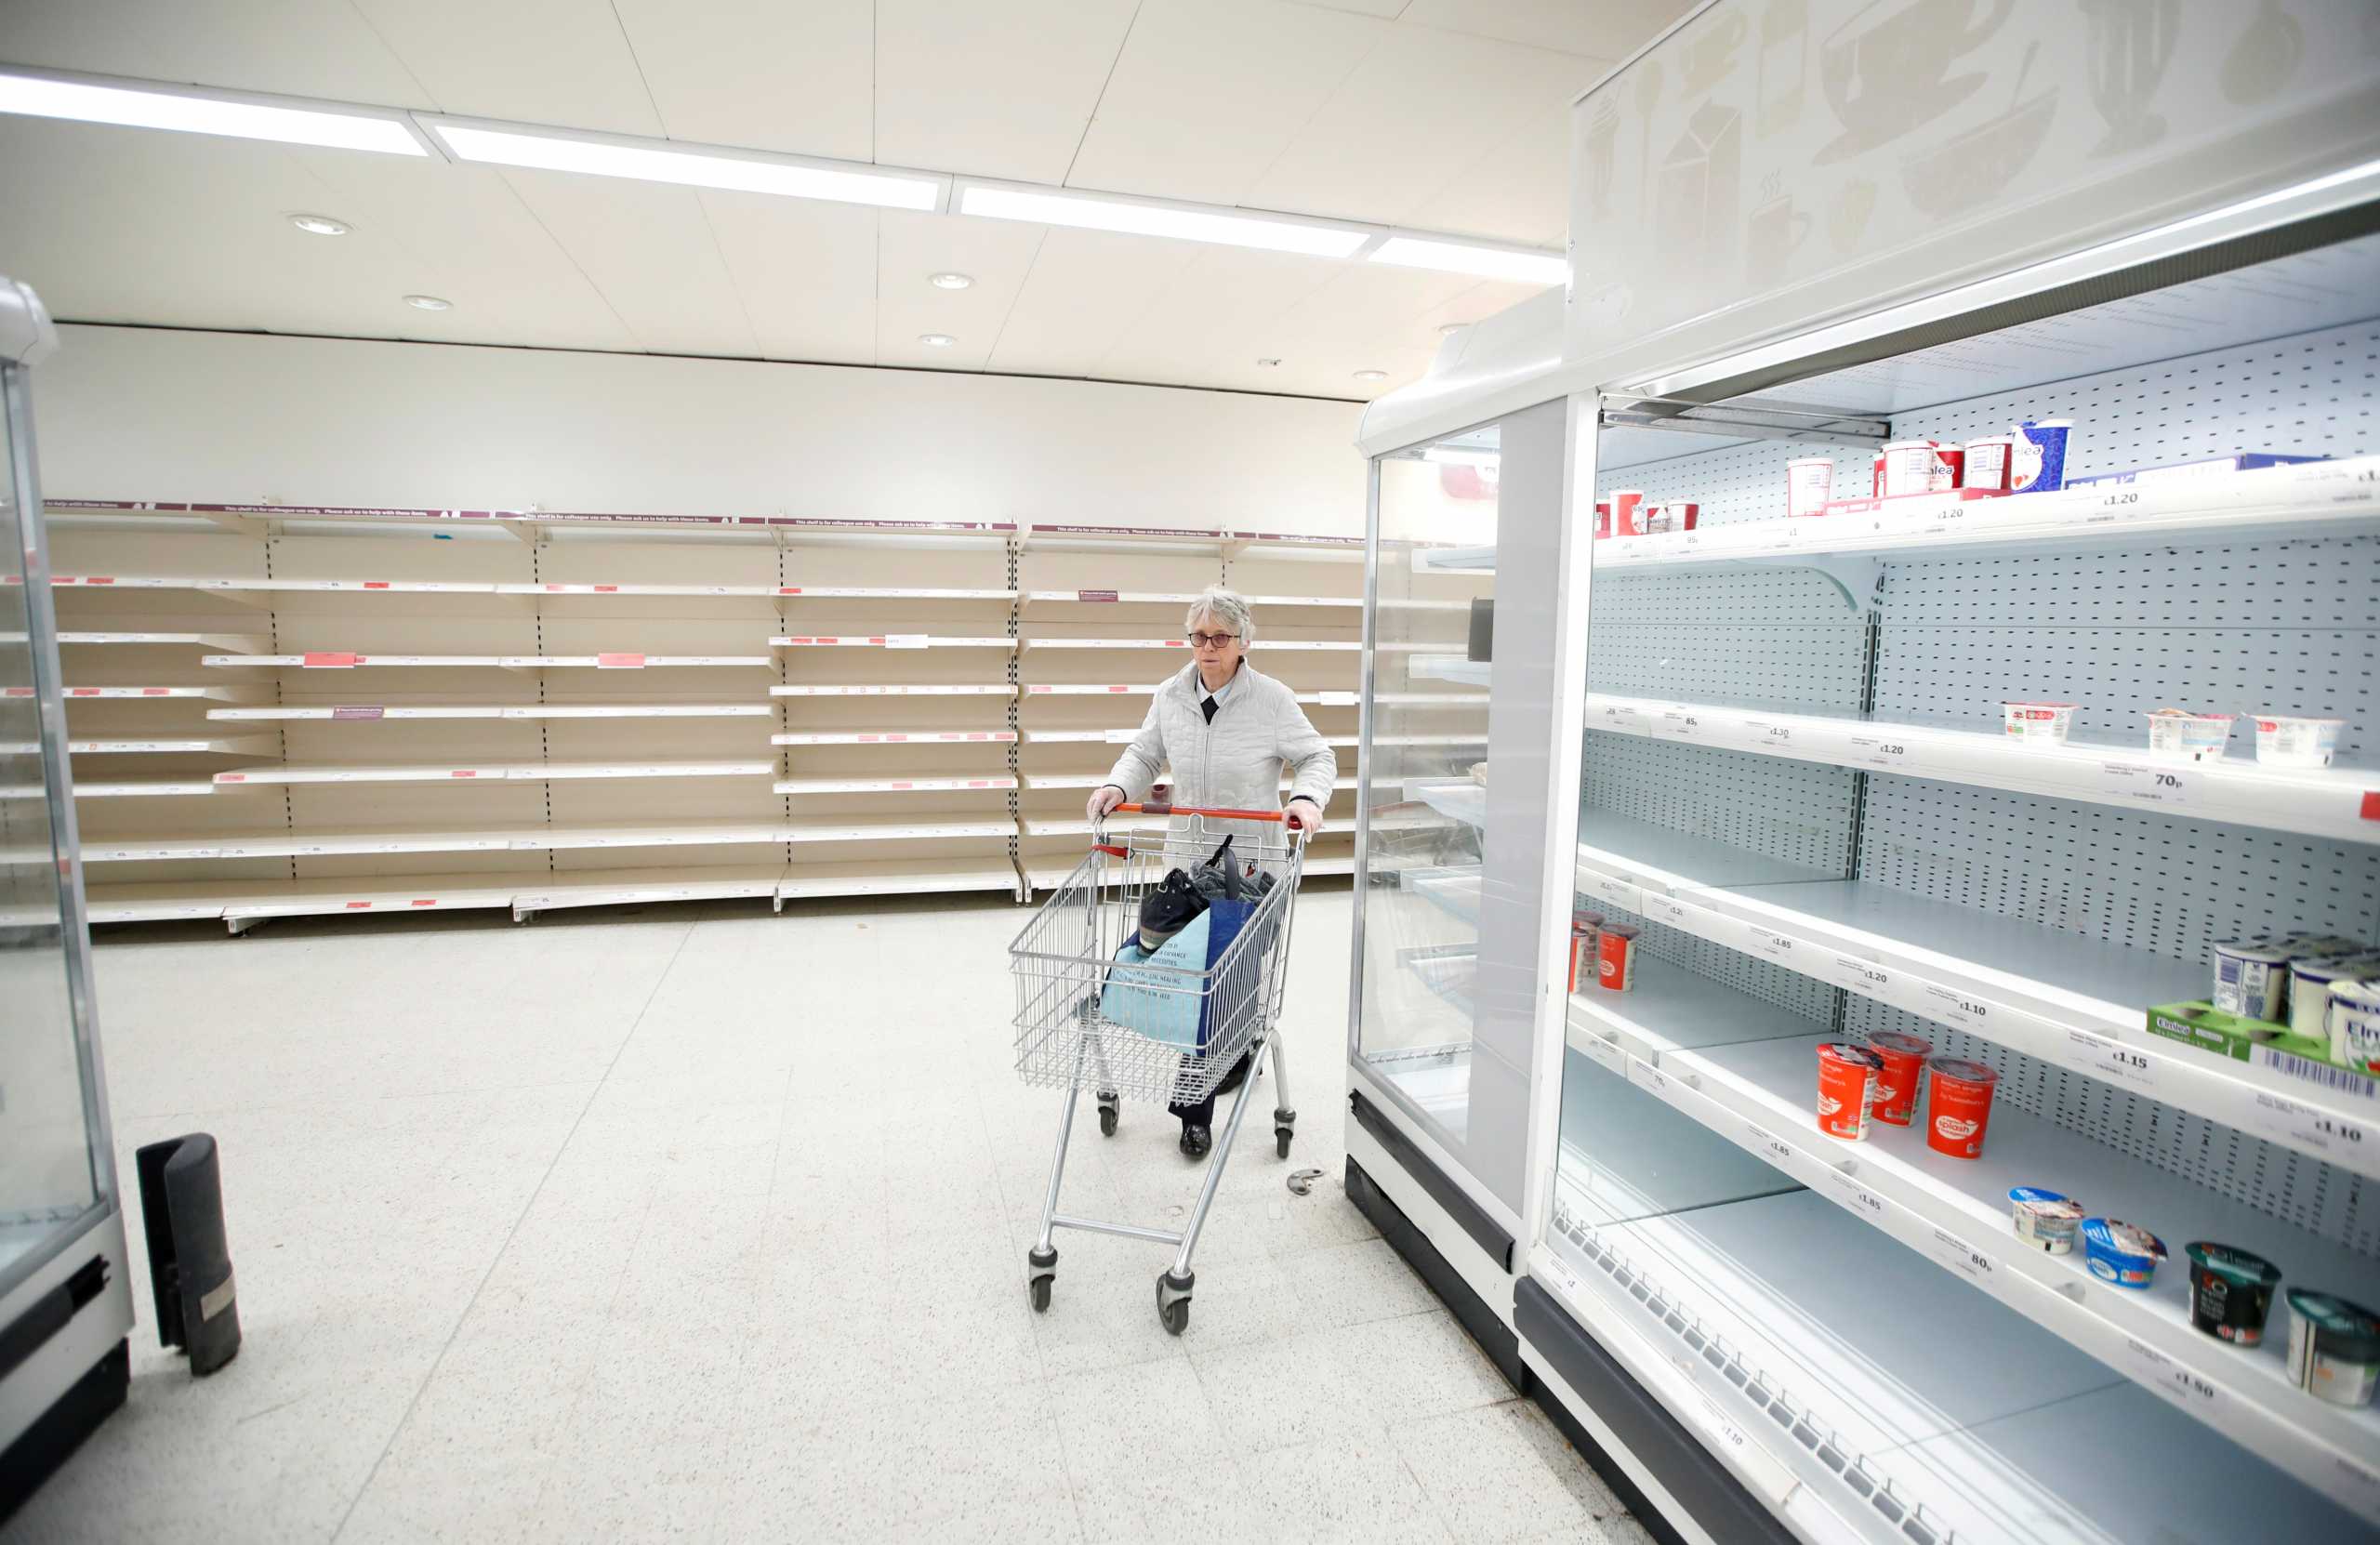 Βρετανία – «Καμπανάκι» από τα Sainsbury’s: Σε λίγο οι ελλείψεις στα σούπερ μάρκετ θα είναι εμφανείς